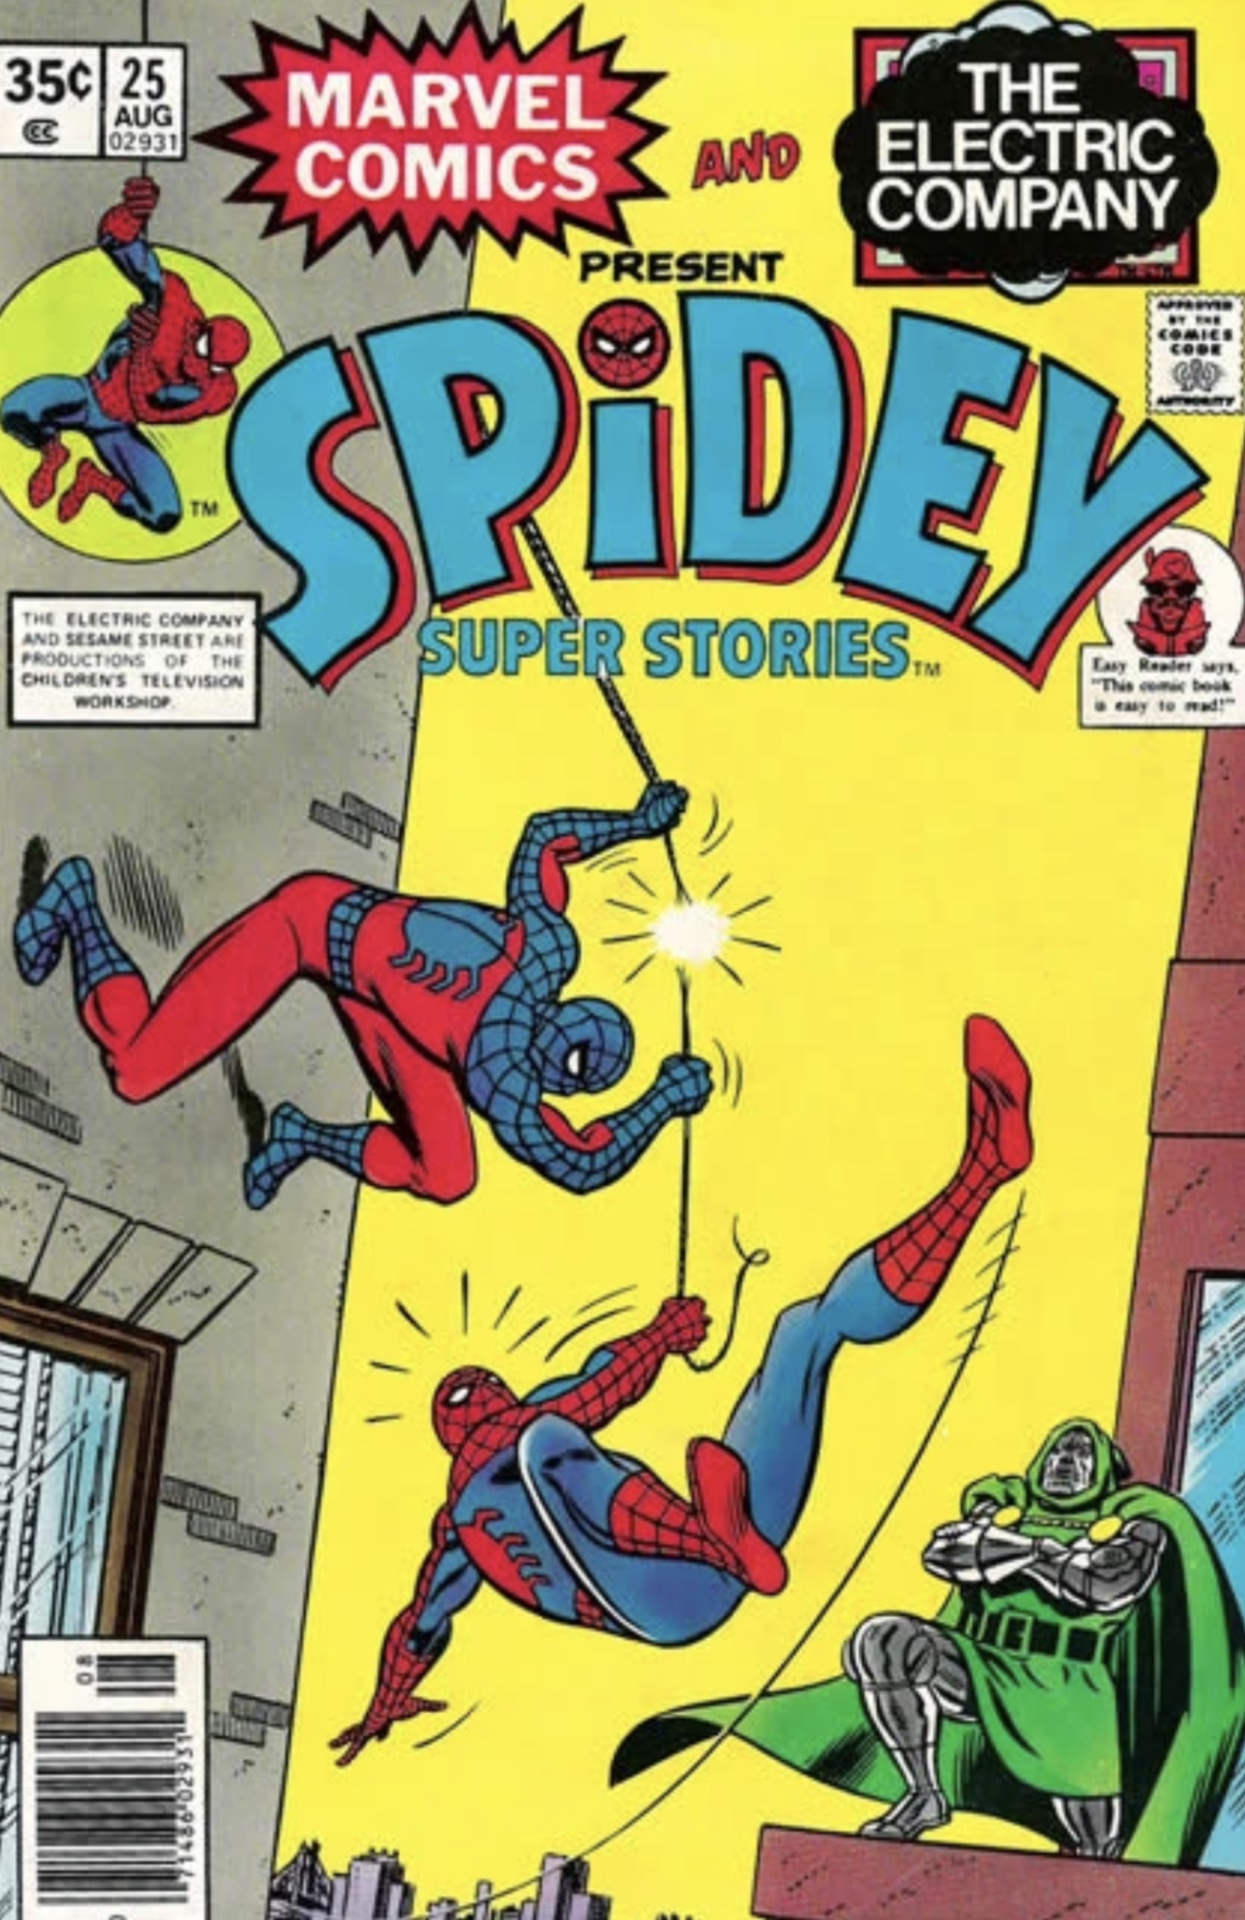 Couverture de Spidey Super Stories #25